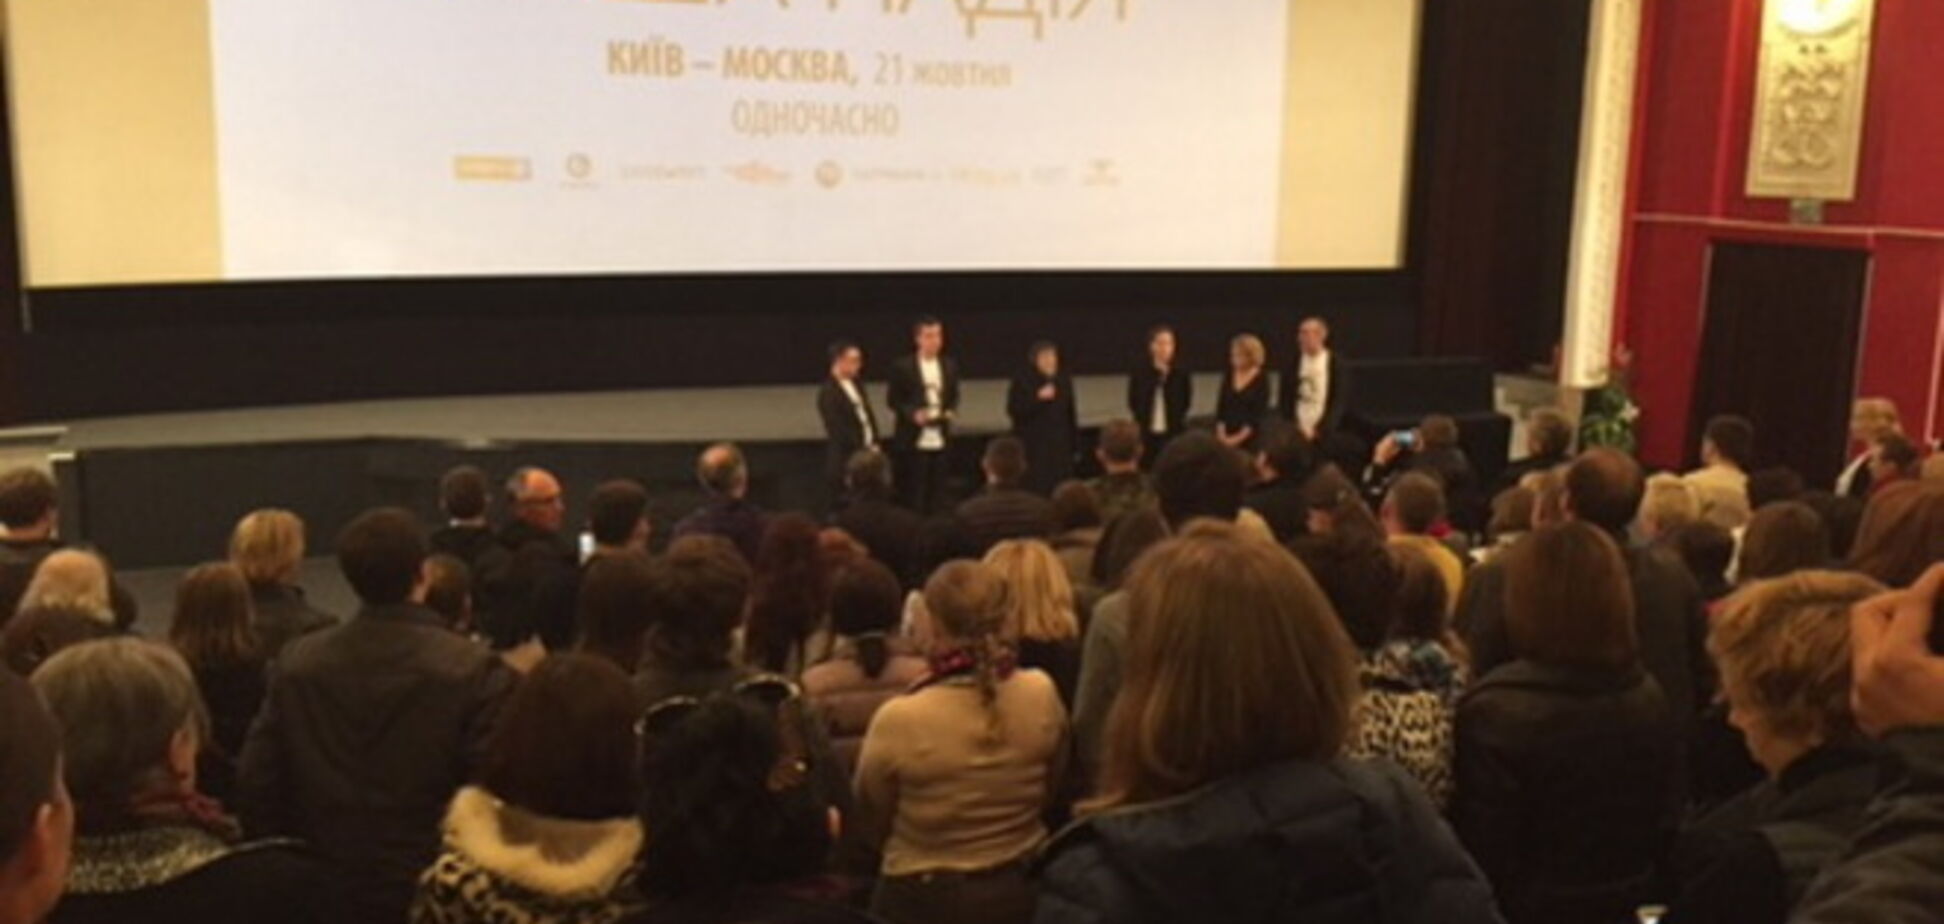 Представники 'Батьківщини' відвідали прем'єру фільму про льотчицю Савченко в Києві